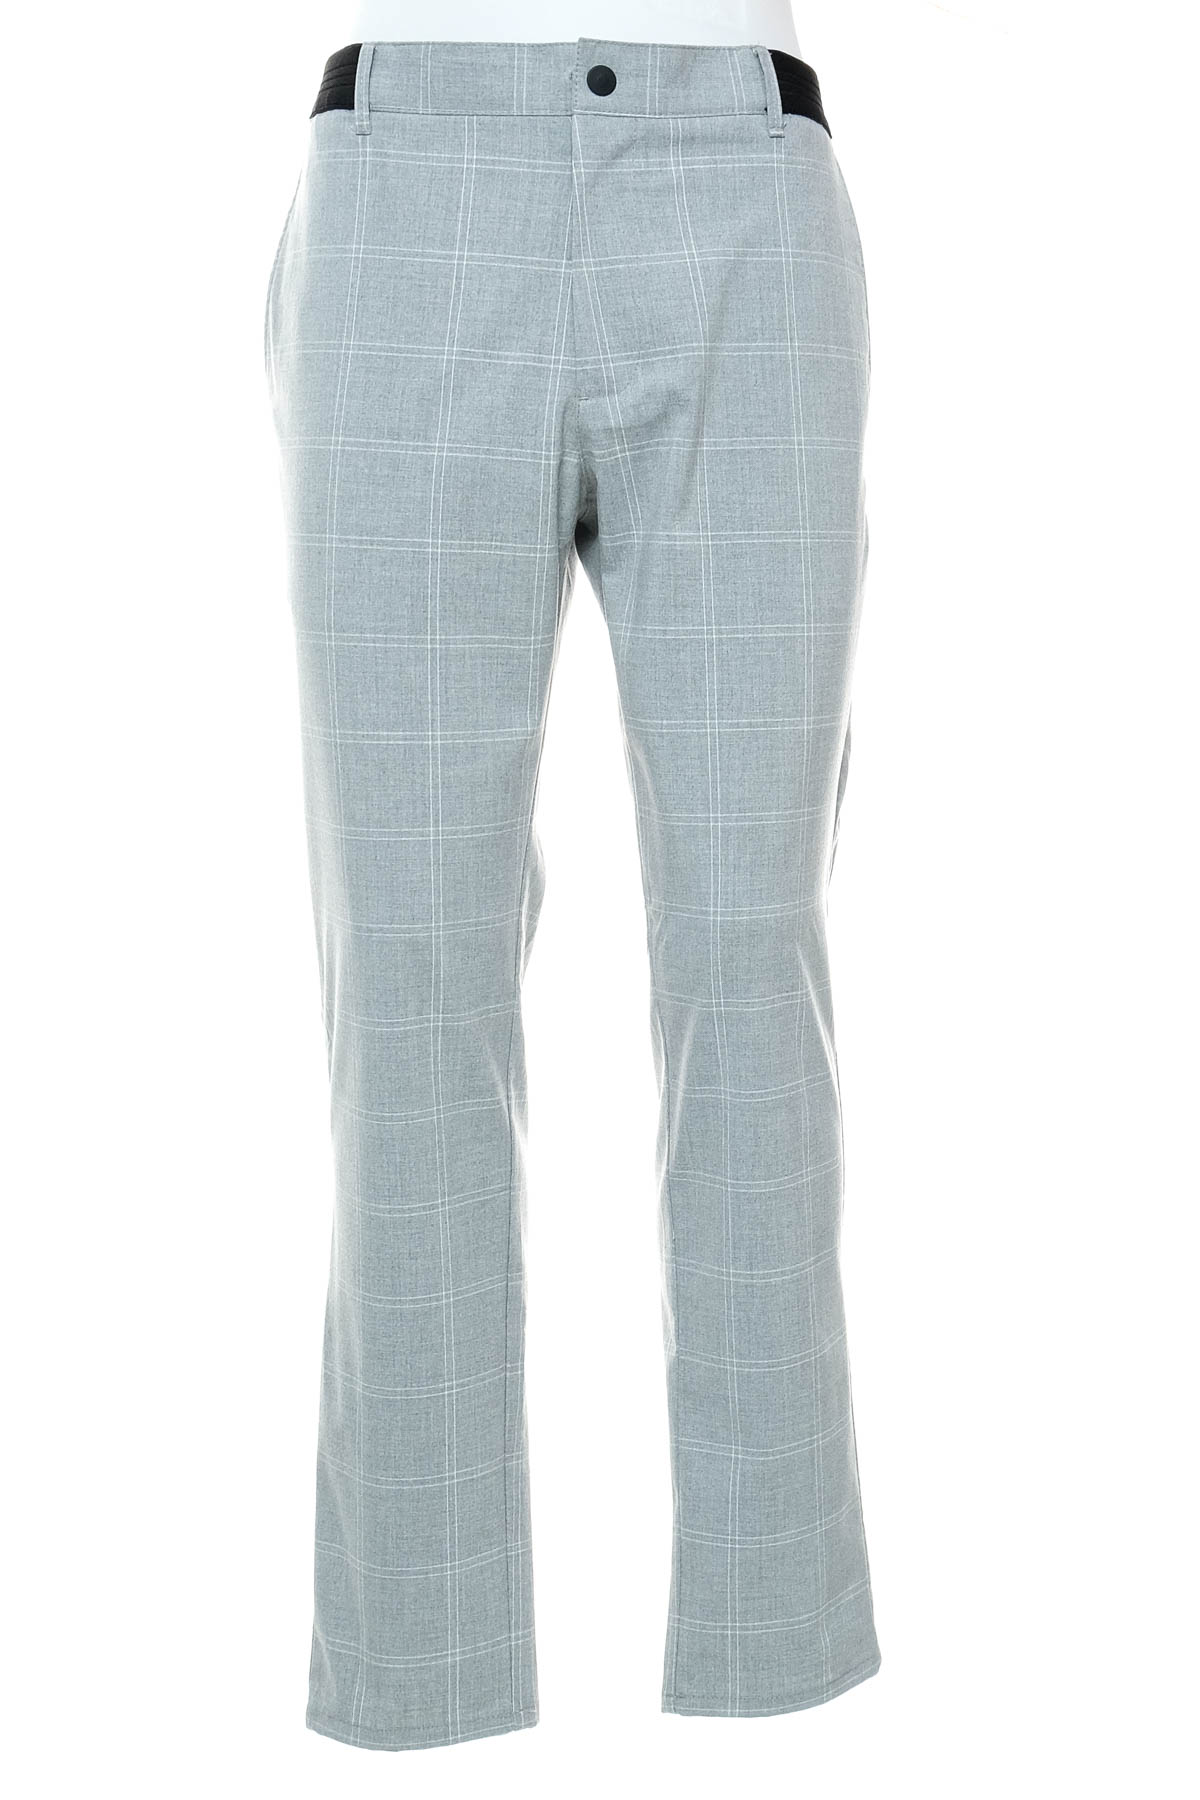 Men's trousers - ZARA - 0